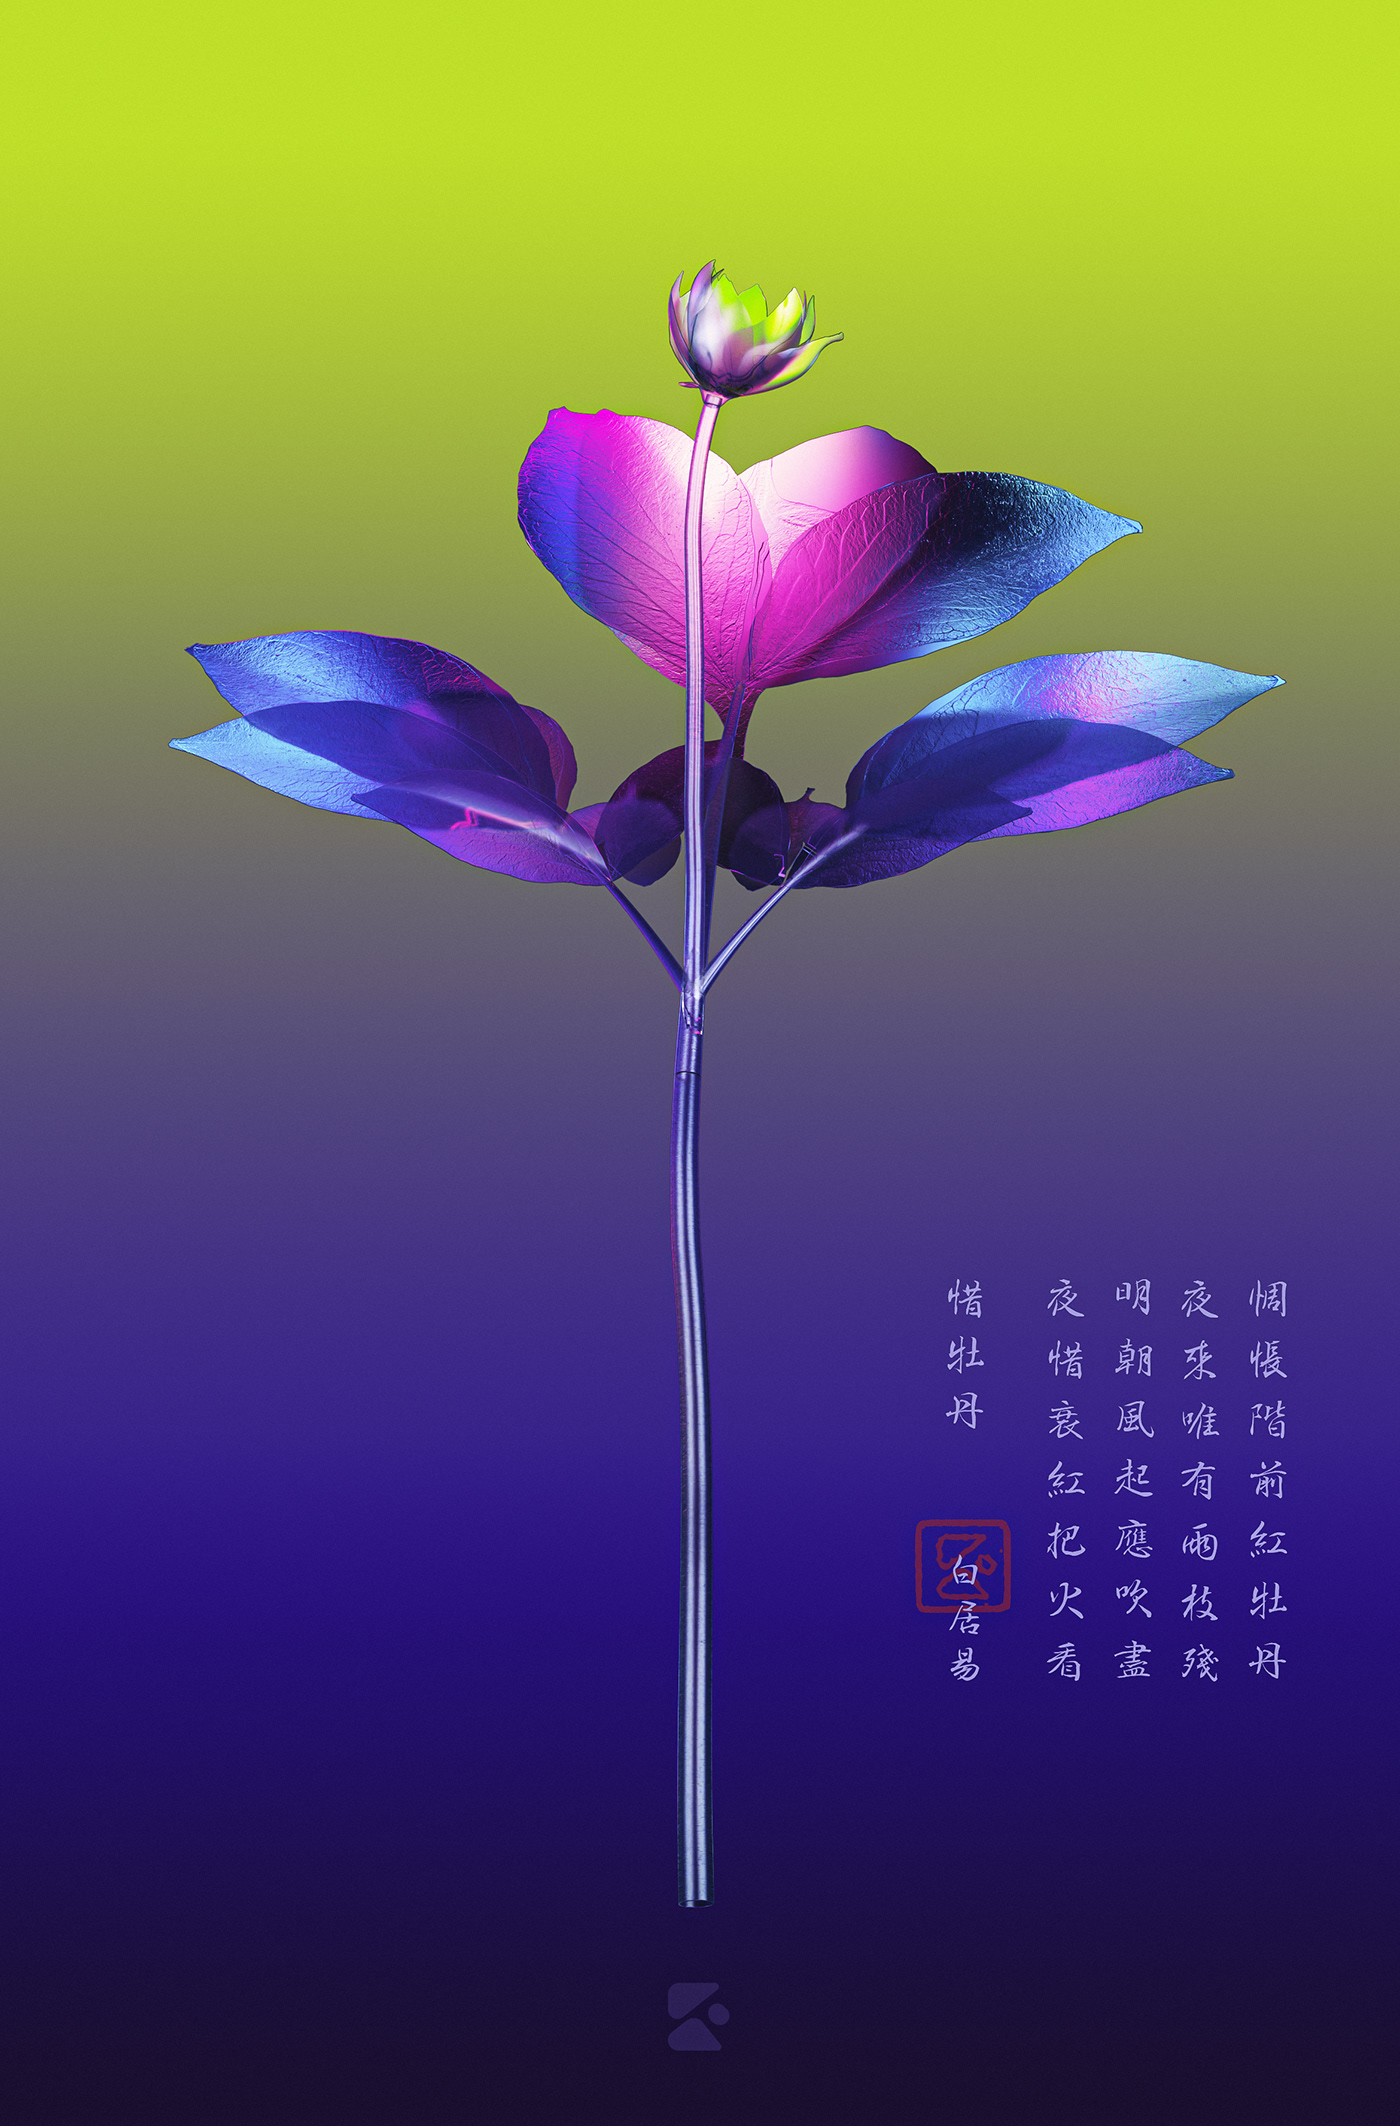 3D c4d color vector art Flowers graphic design  ILLUSTRATION  photoshop typography  